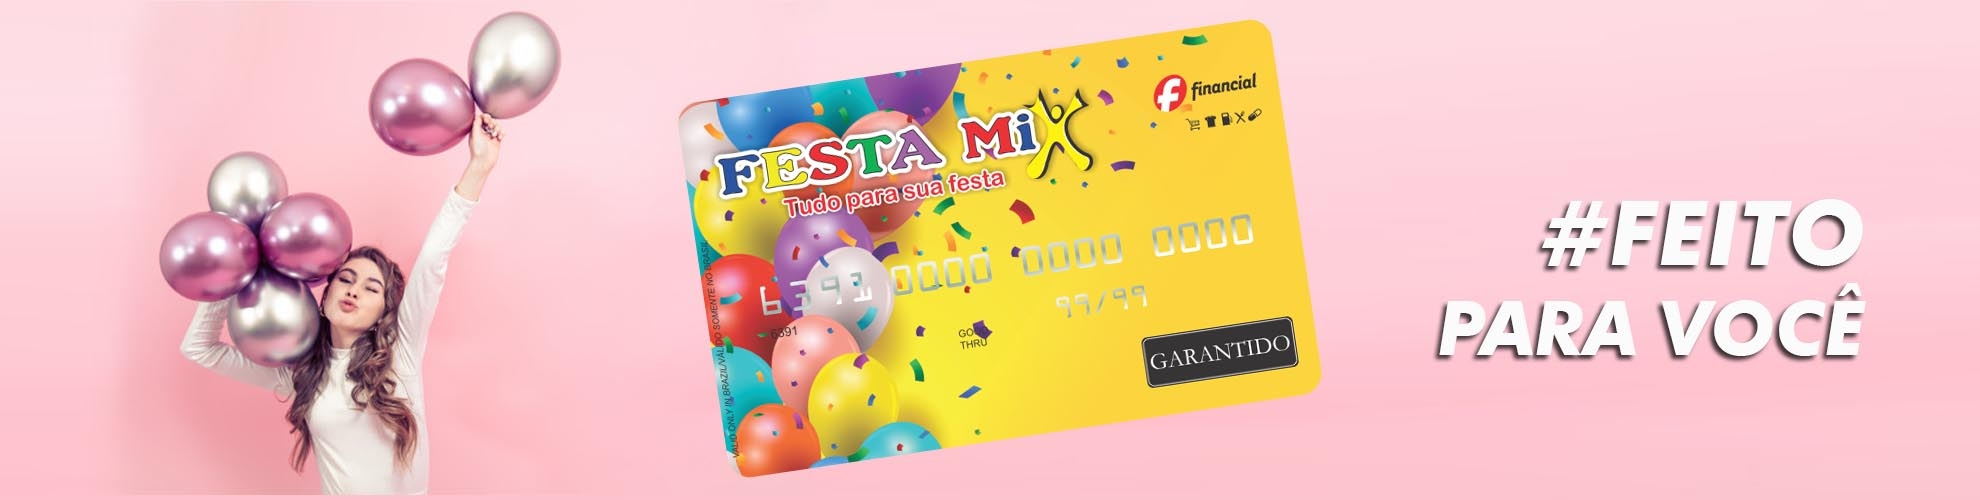 Cartão Festa Mix - Crédito